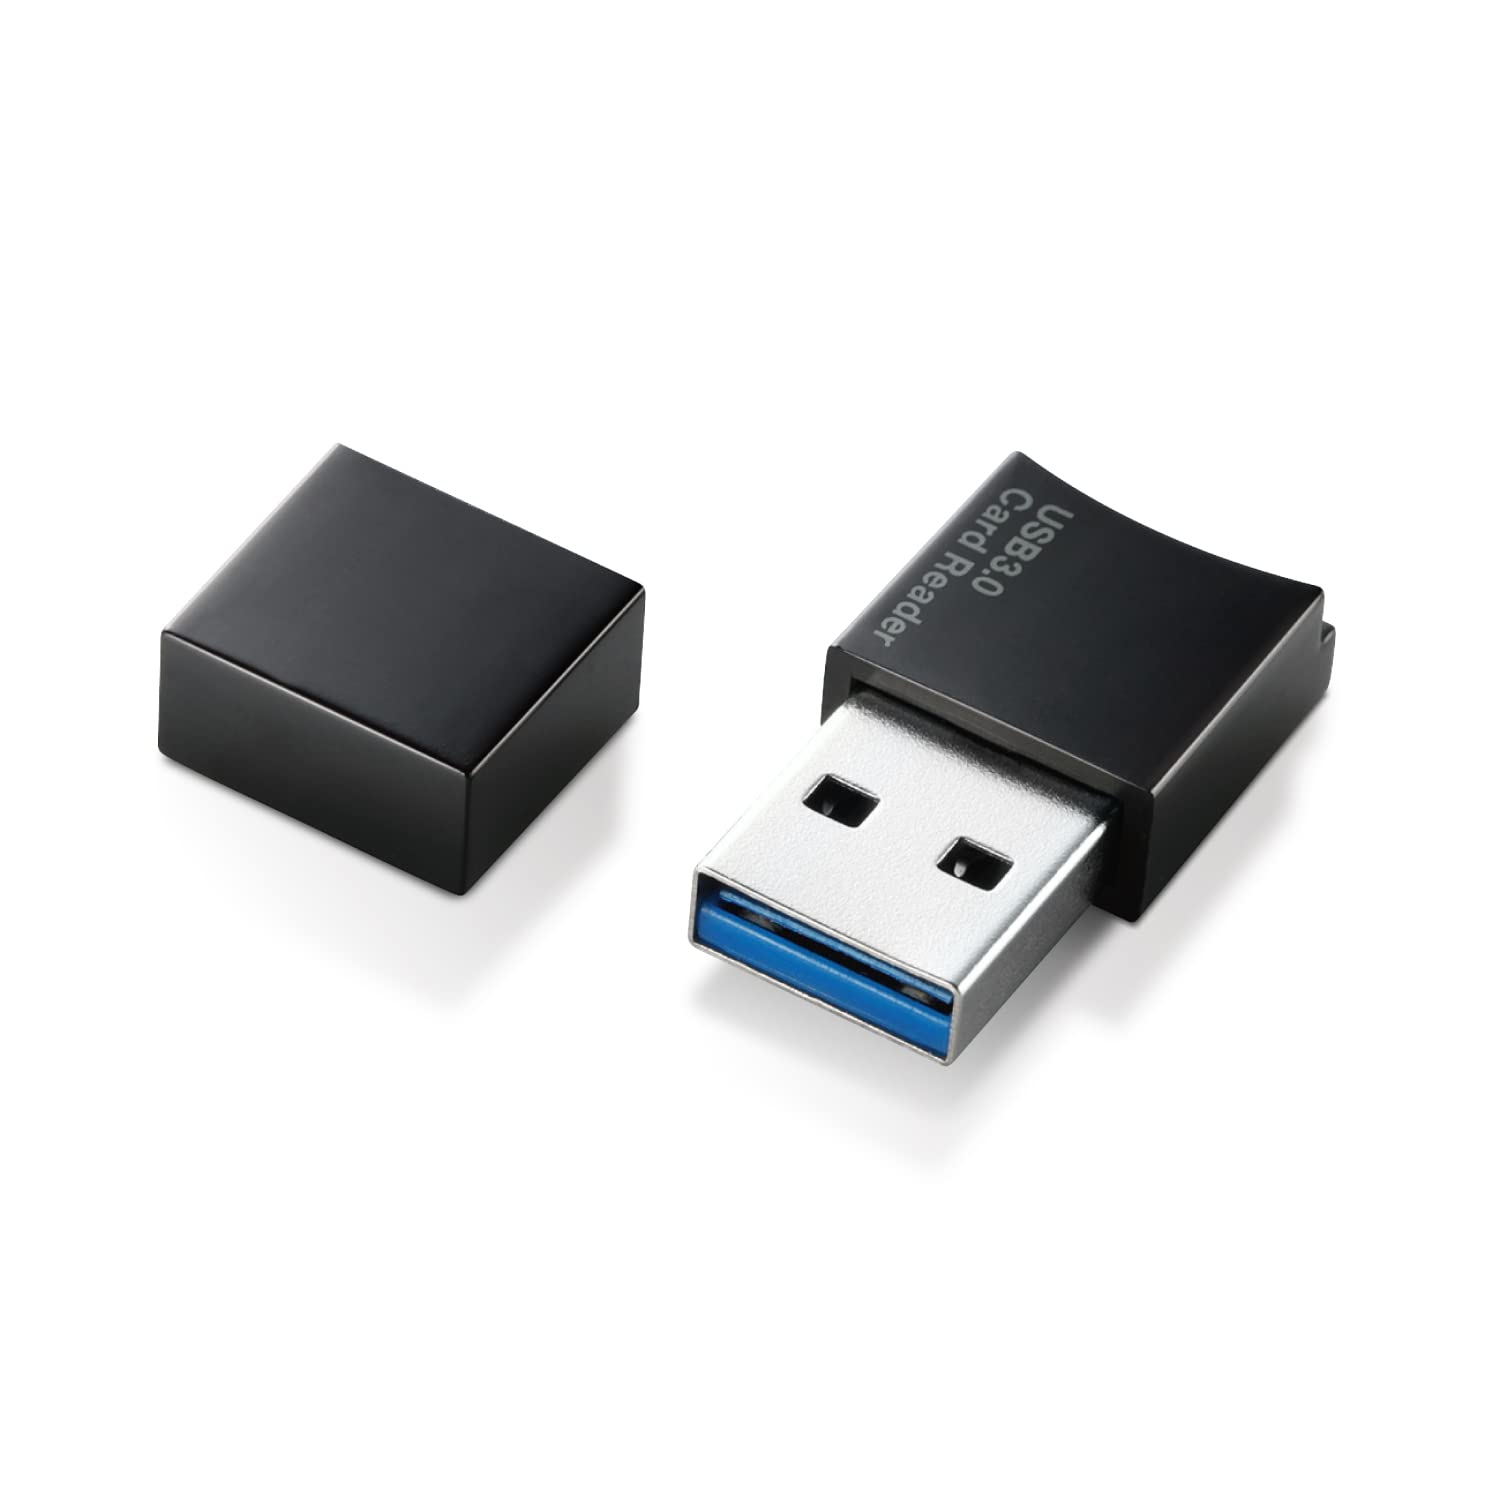 エレコム カードリーダー USB3.0 9倍速転送 microSD用 コネクタキャップ付 コンパクト設計 ブラック MR3-C008BK